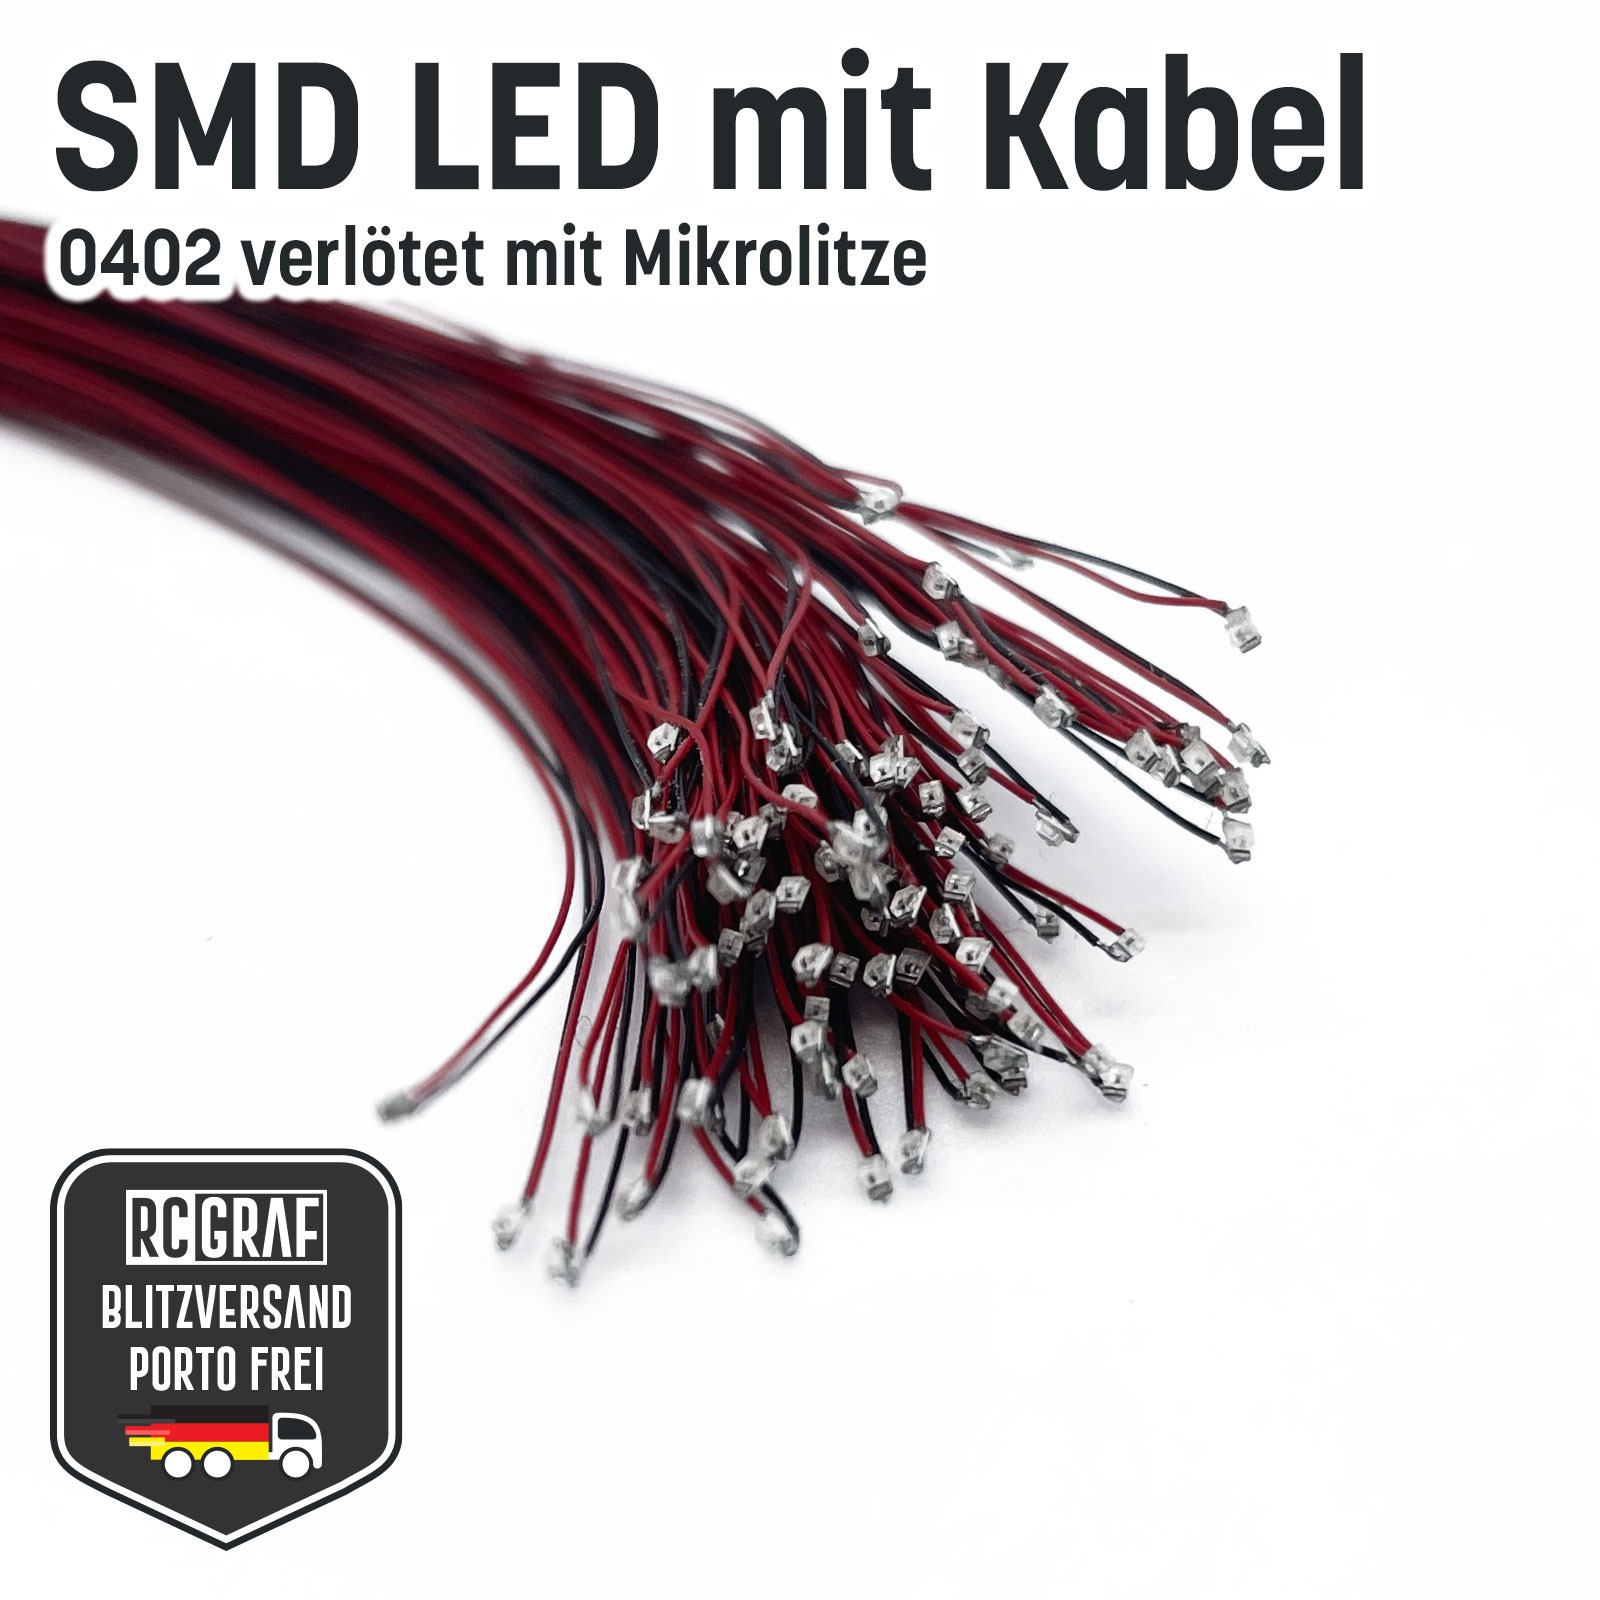 SMD LED 0402 Microlitze 30cm verlötet